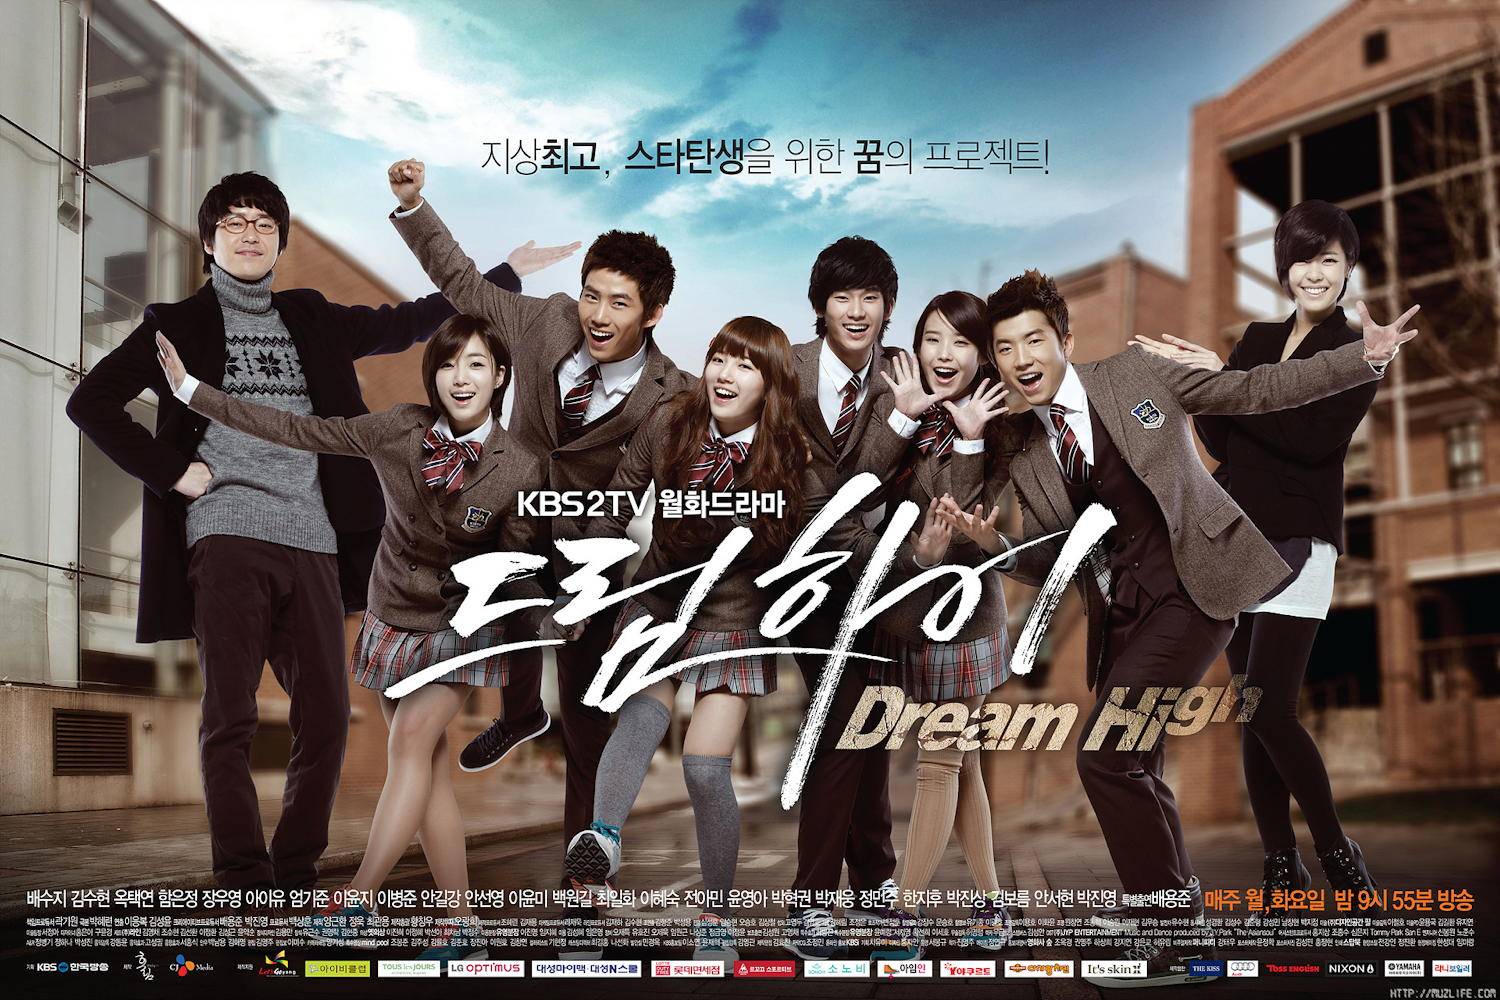 phim Dream High lấy đề tài từ giới Kpop do nhiều thần tượng Kpop nổi tiếng đóng